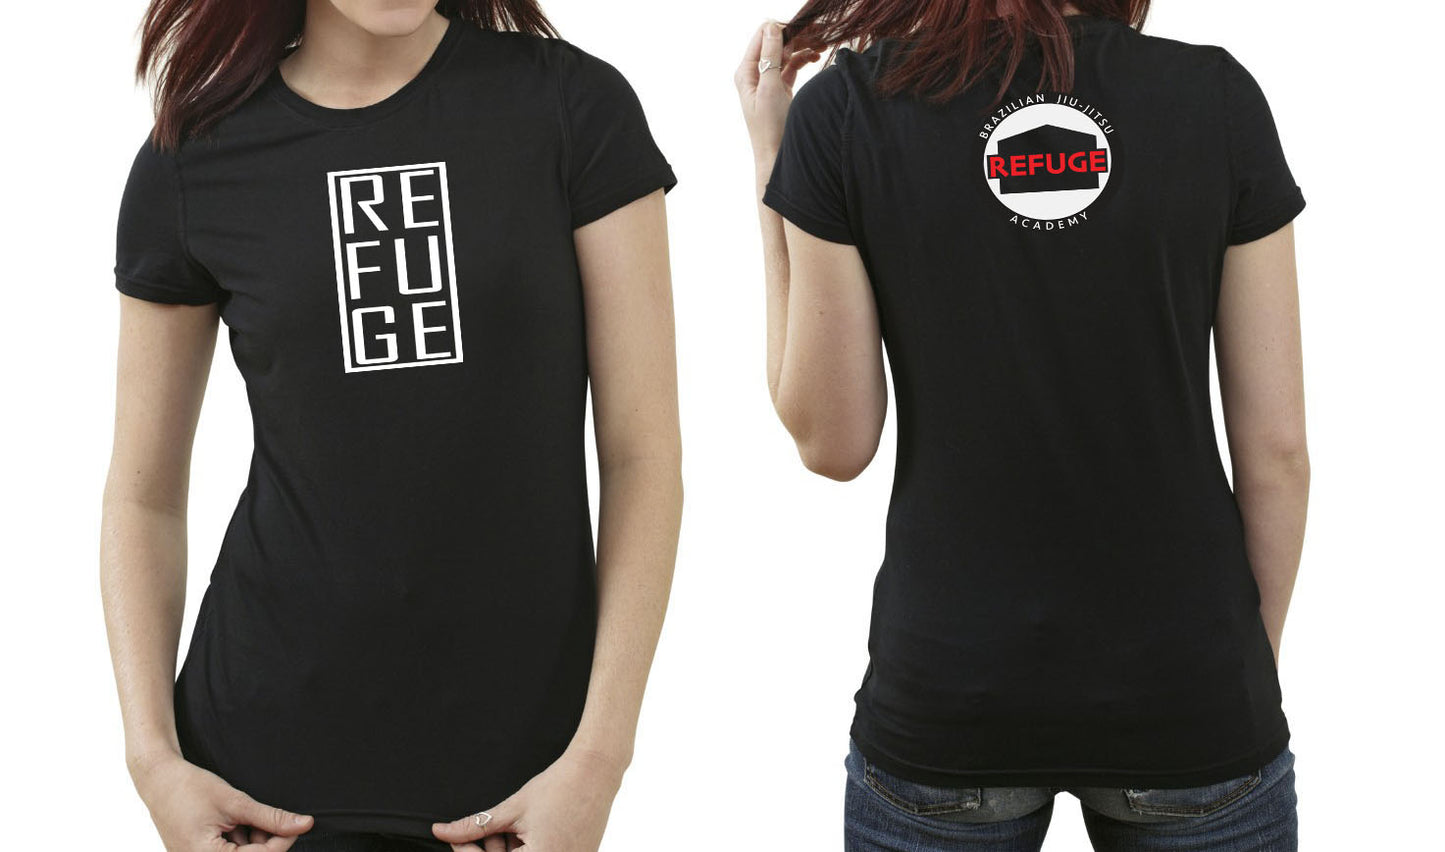 New Refuge T-Shirt (Female fit)